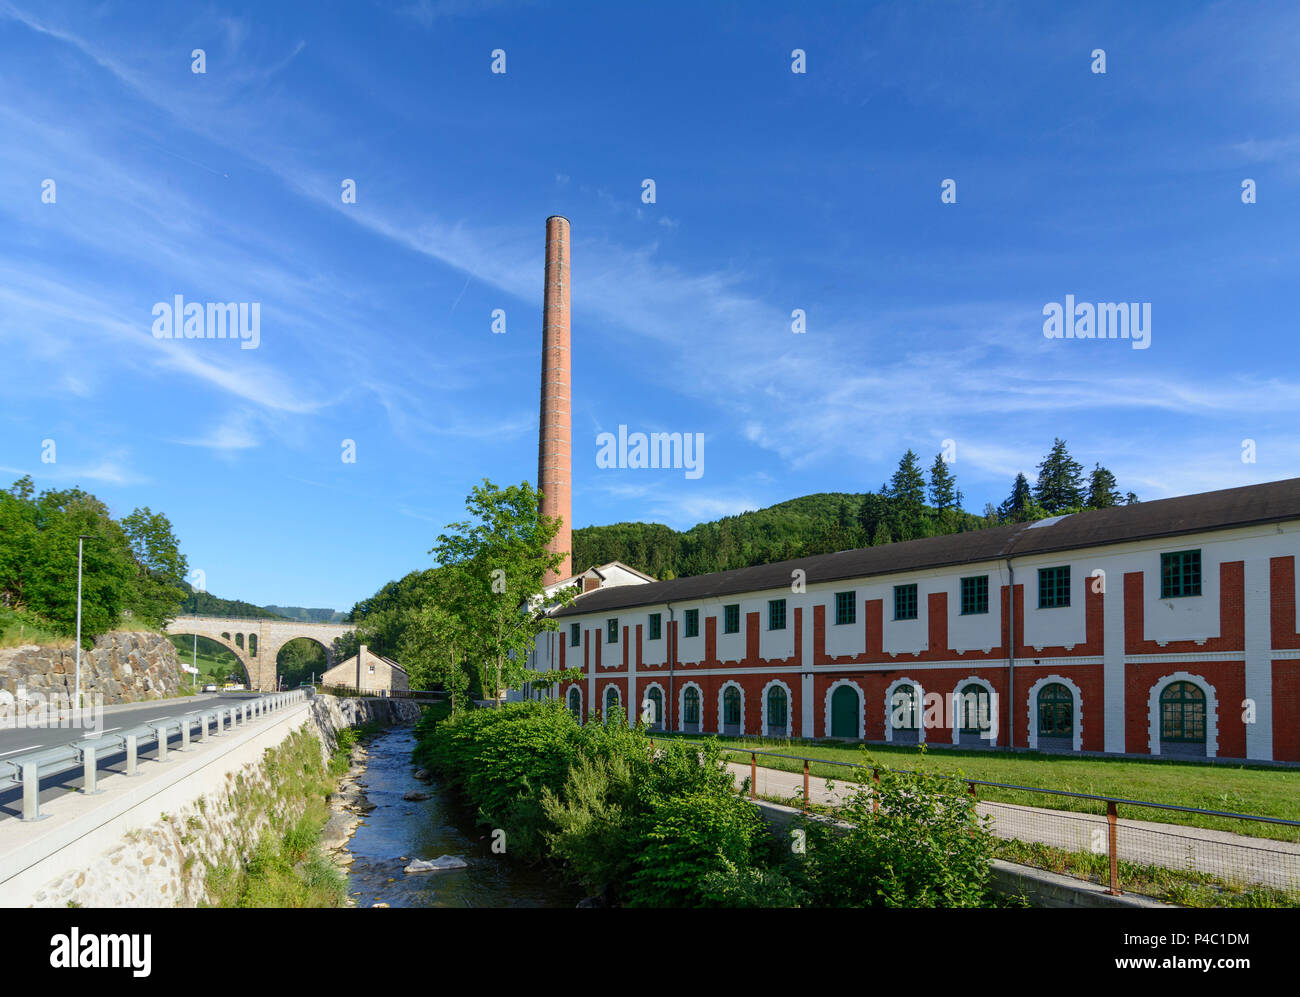 Scheibbs, Papierfabrik (paper mill) in Neubruck, Mostviertel region, Lower Austria, Austria Stock Photo